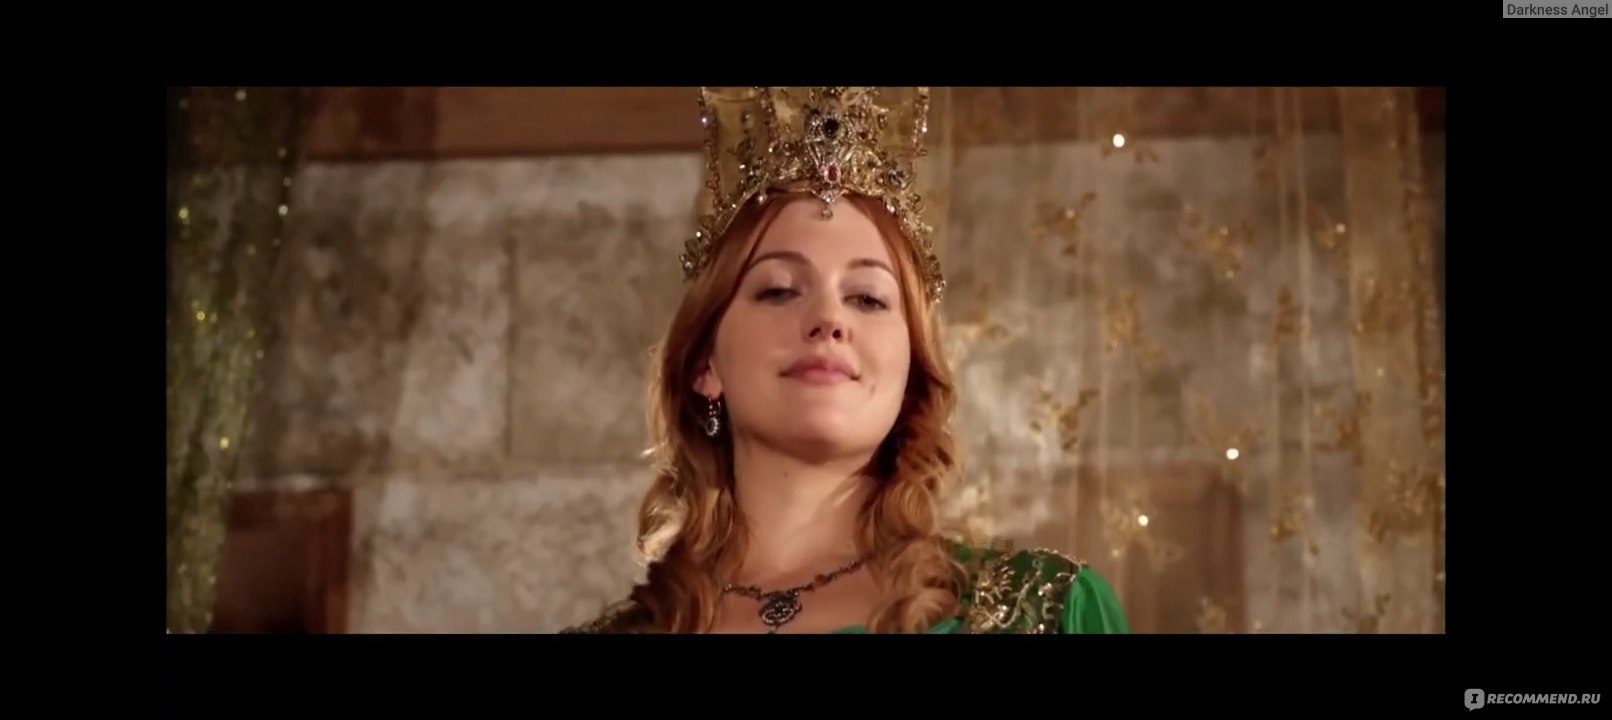 Османский шик: самые красивые наряды из сериала «Великолепный век»